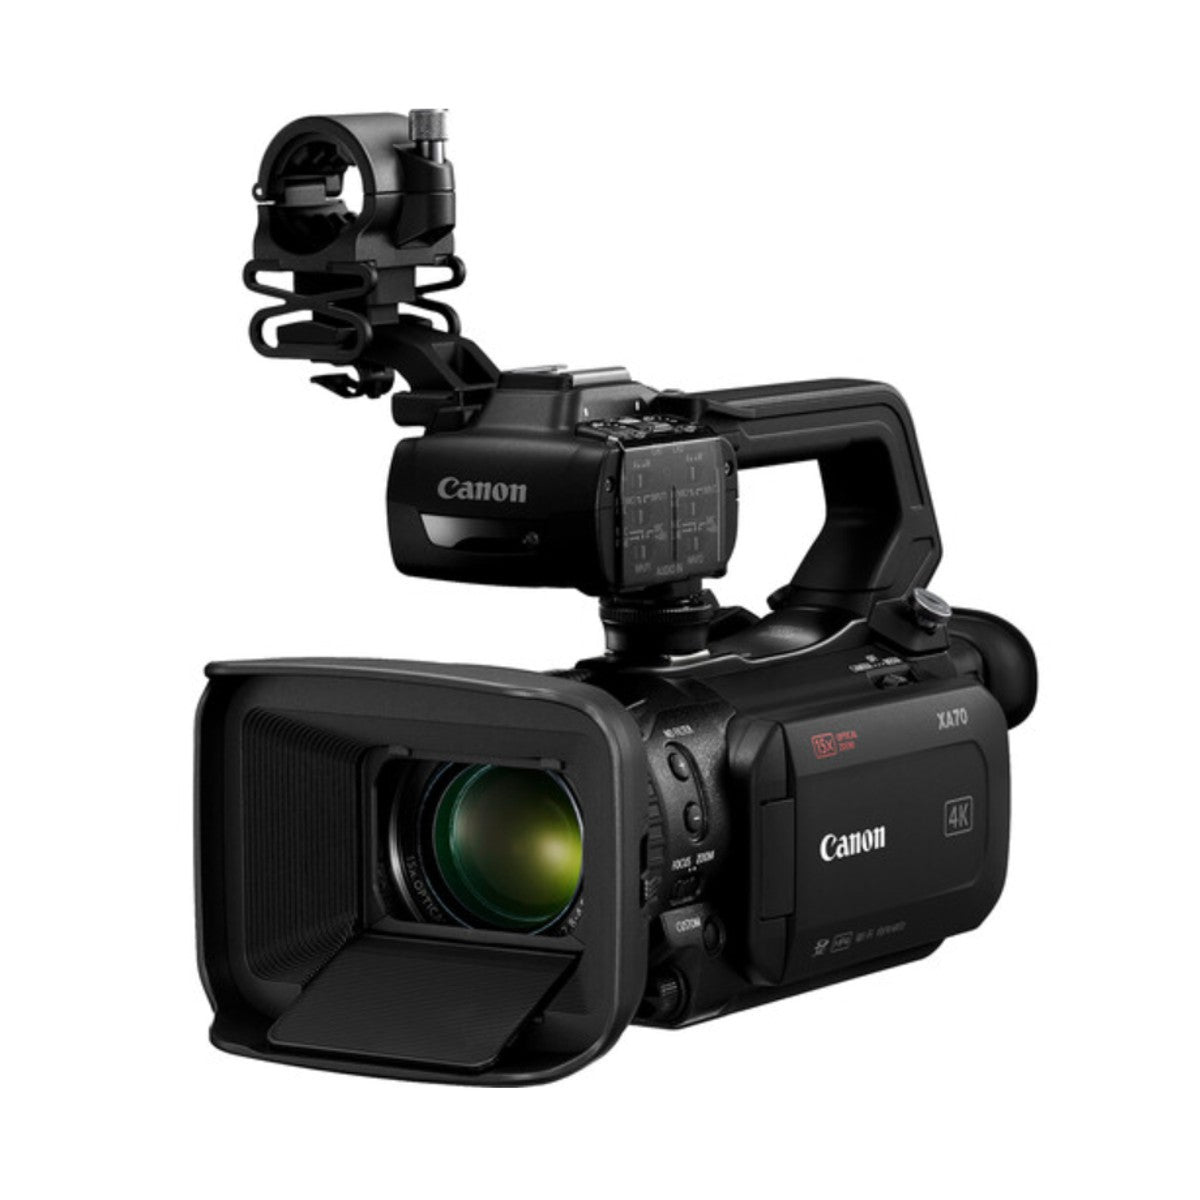 Canon XA70 UHD 4K Camcorder